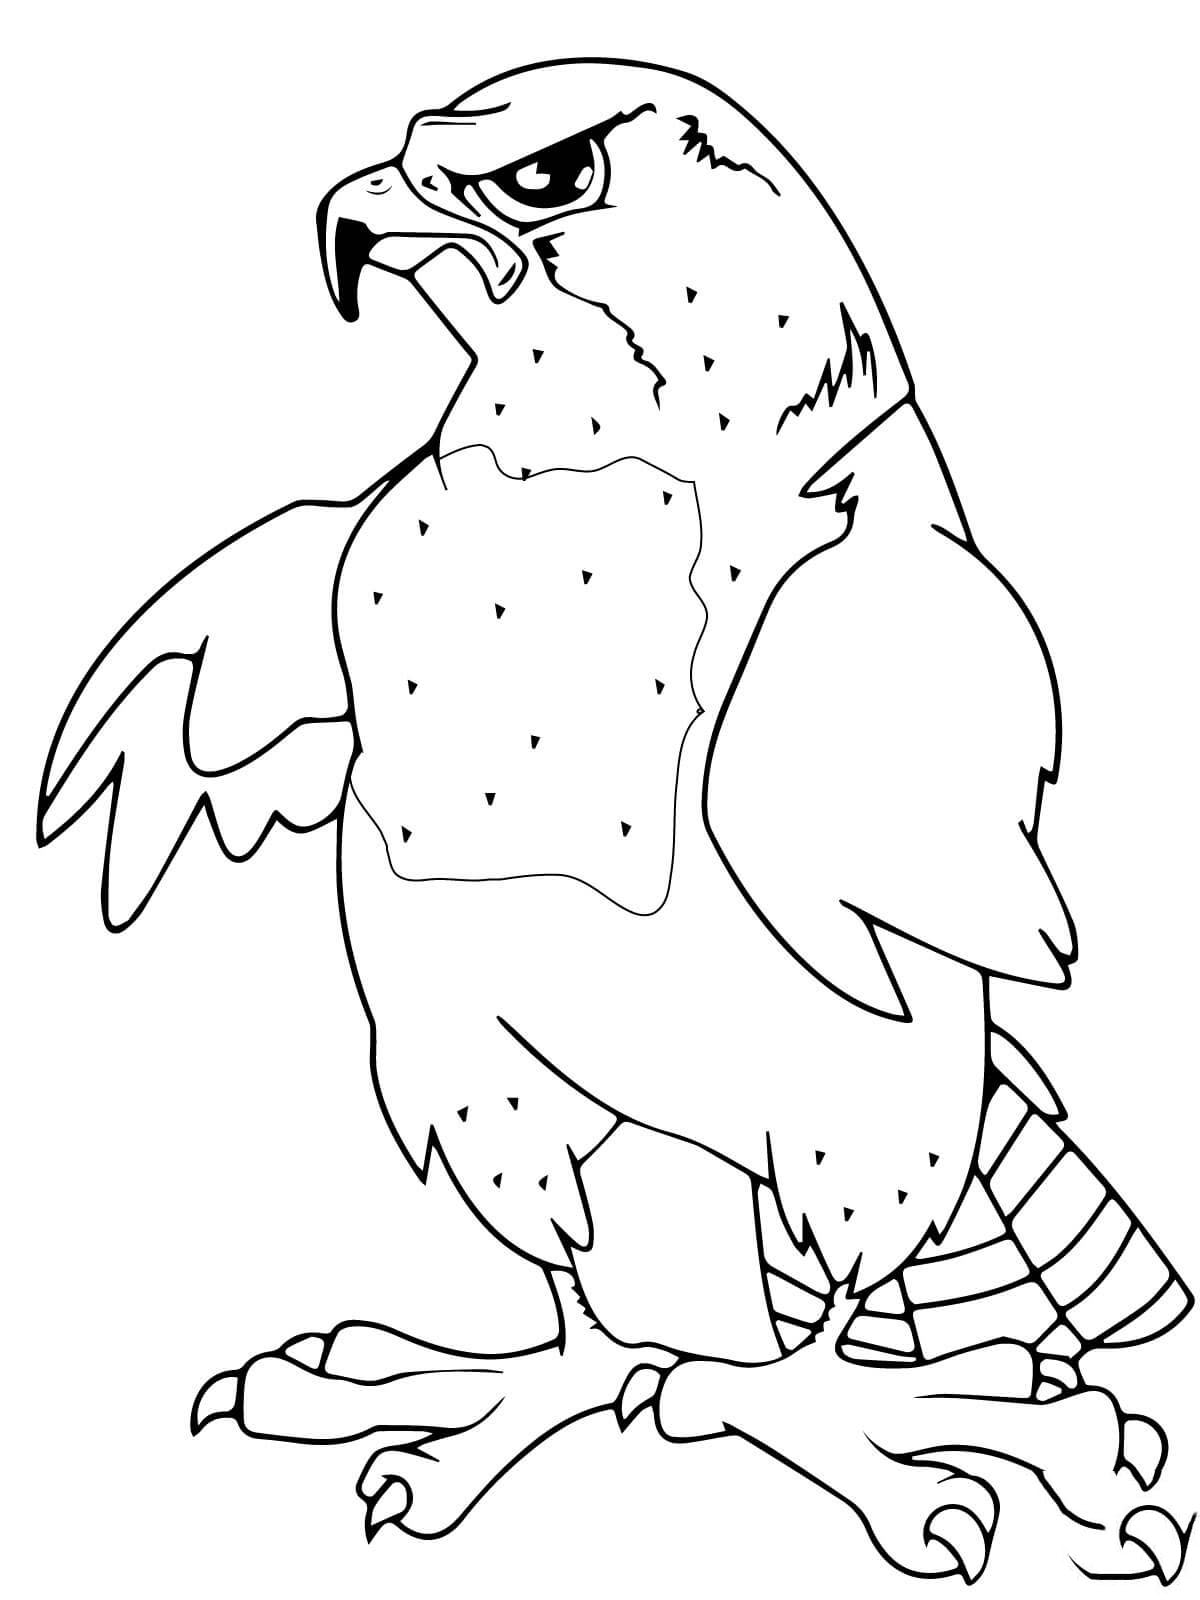  Раскраски орлы летающий орел   большой орел